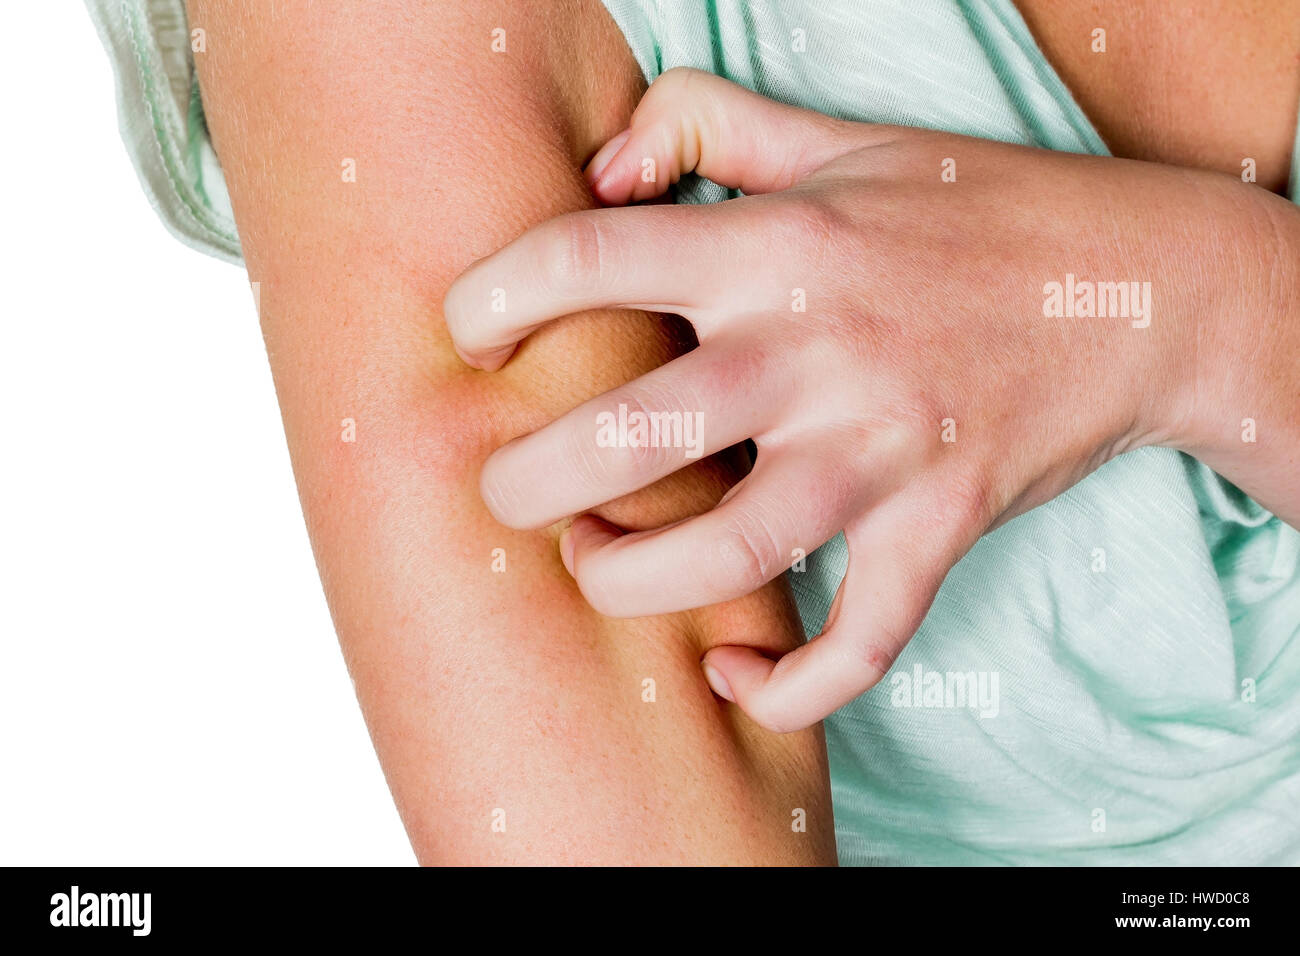 A woman has an itchy skin after a mosquito bite and scratches, Eine Frau hat nach einem M¸ckenstich eine juckende Haut und kratzt sich Stock Photo